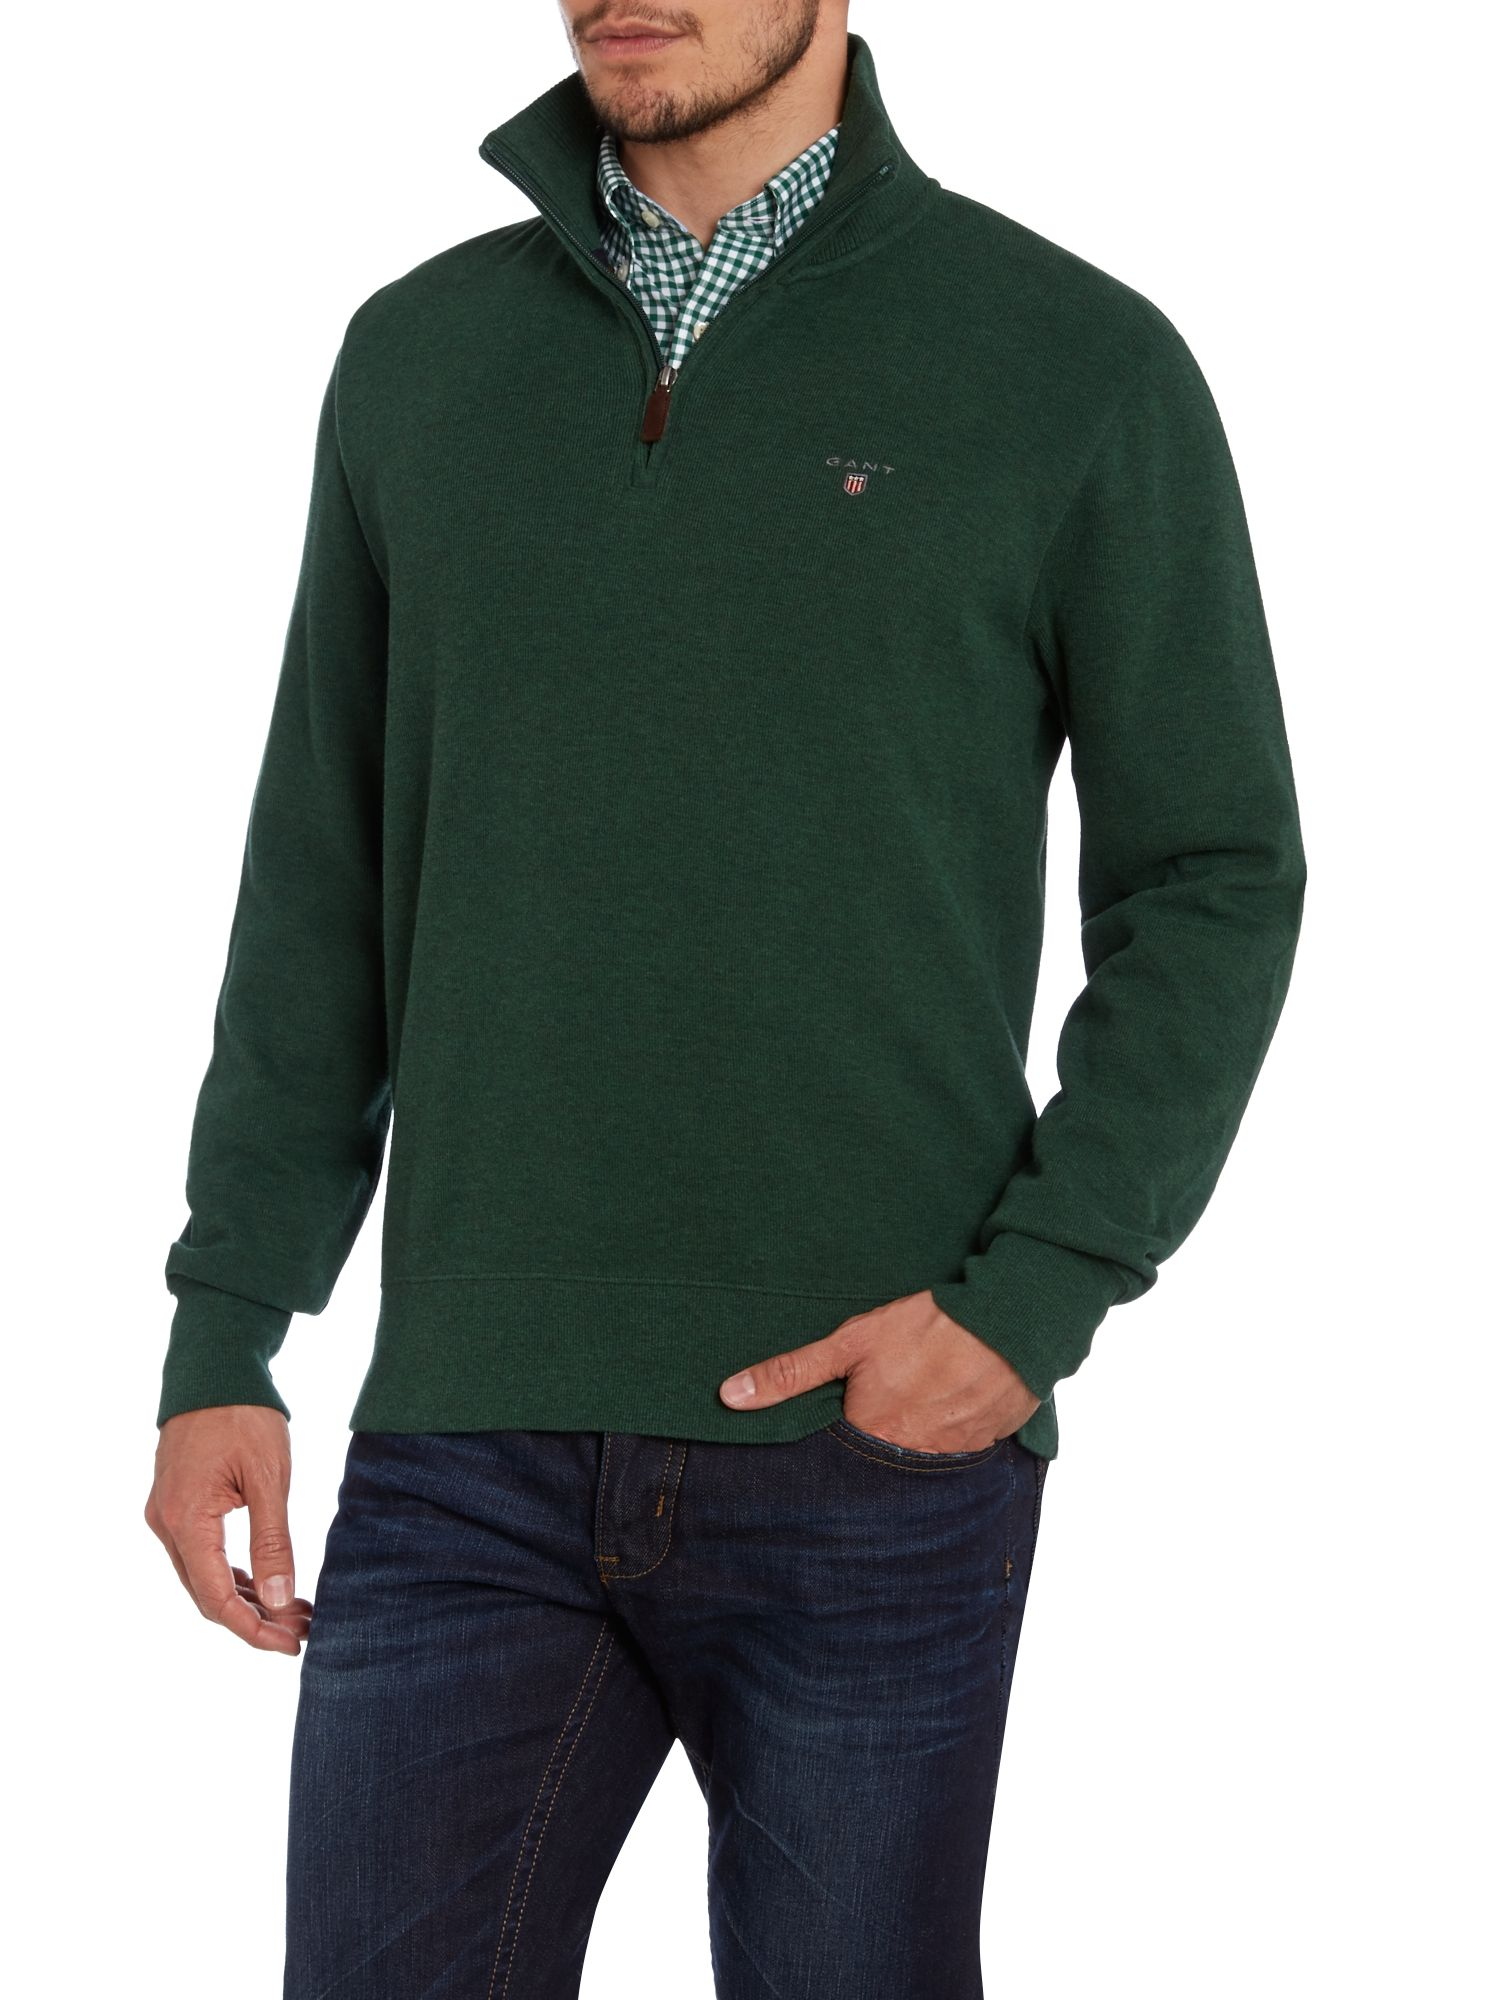 Gant Sacker Ribbed Half Zip Collar Sweatshirt in Green for Men - Lyst